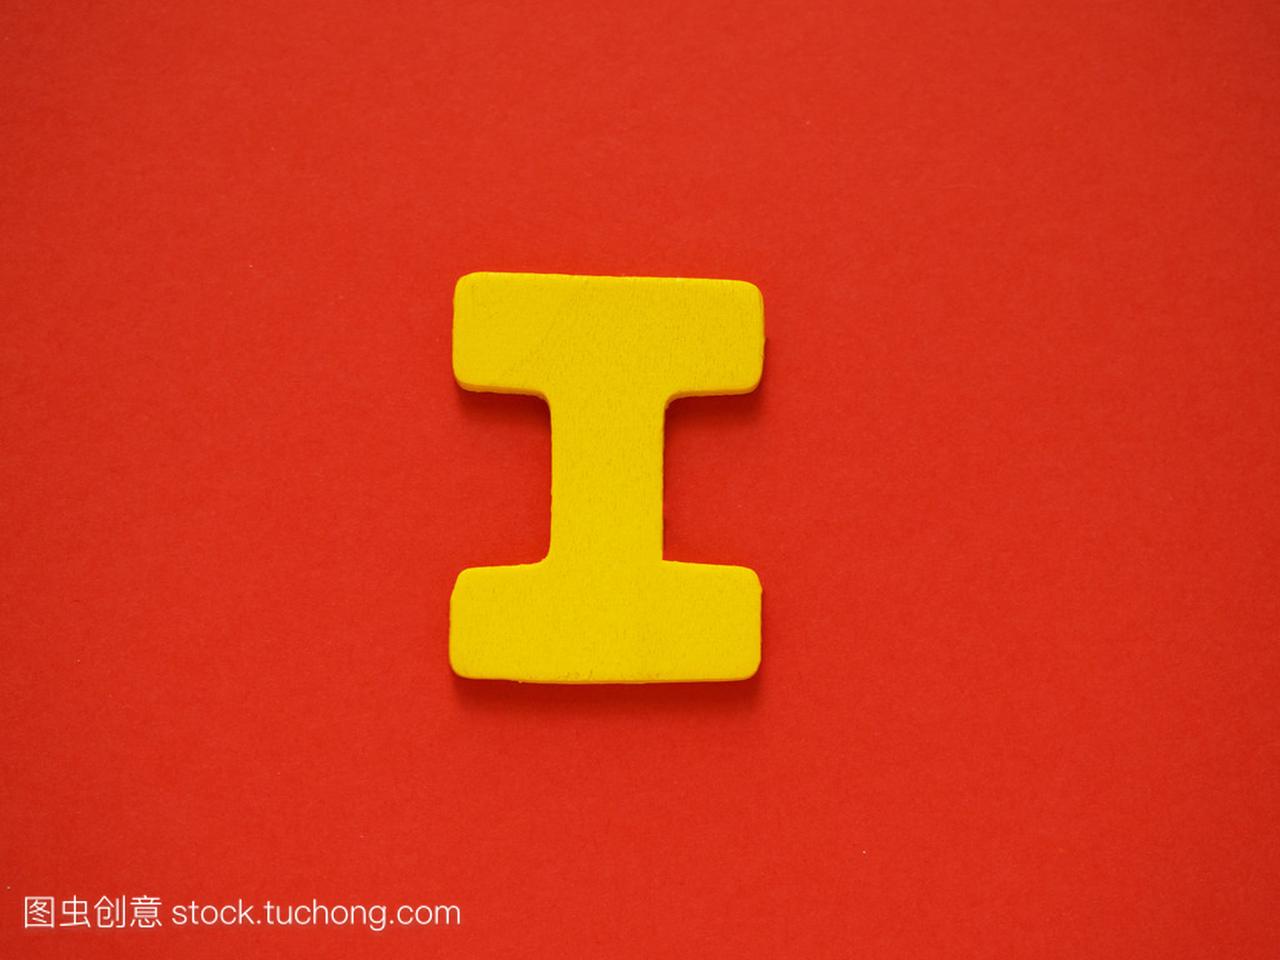 大写字母 I.黄色字母 I 从红色背景上的木头